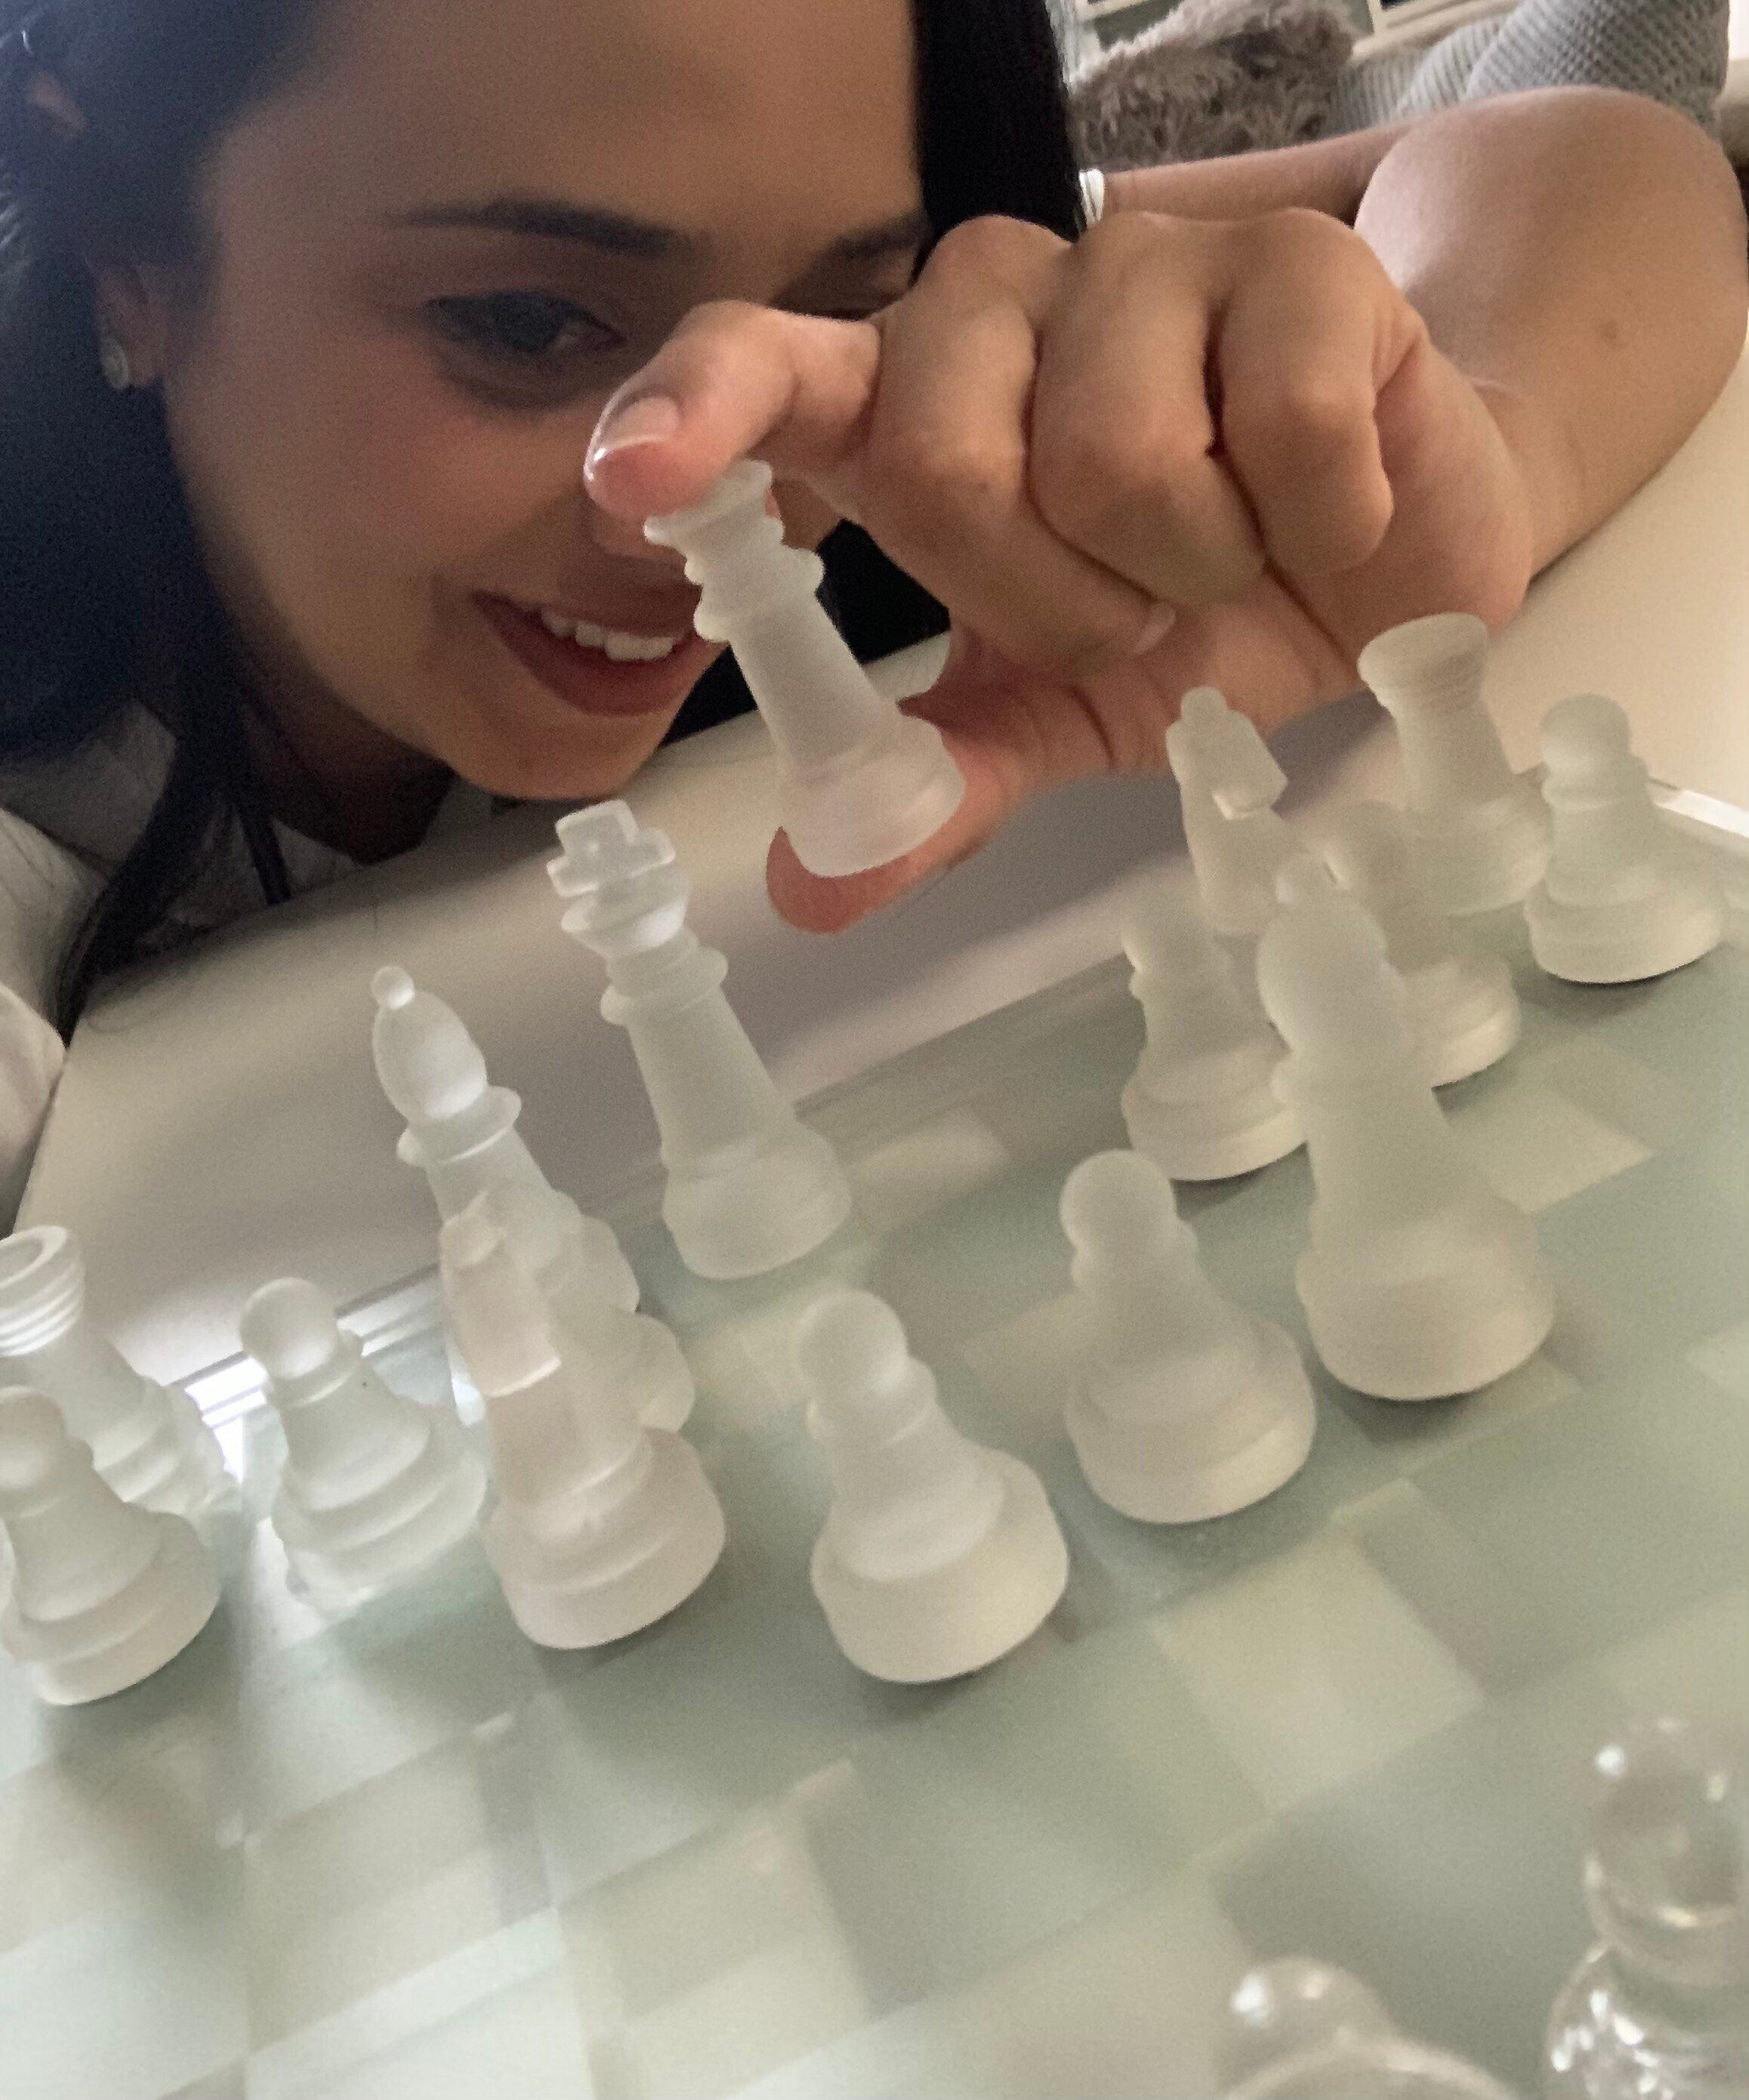 No que 'O gambito da rainha' acerta e erra ao representar o xadrez na tela  - Jornal O Globo